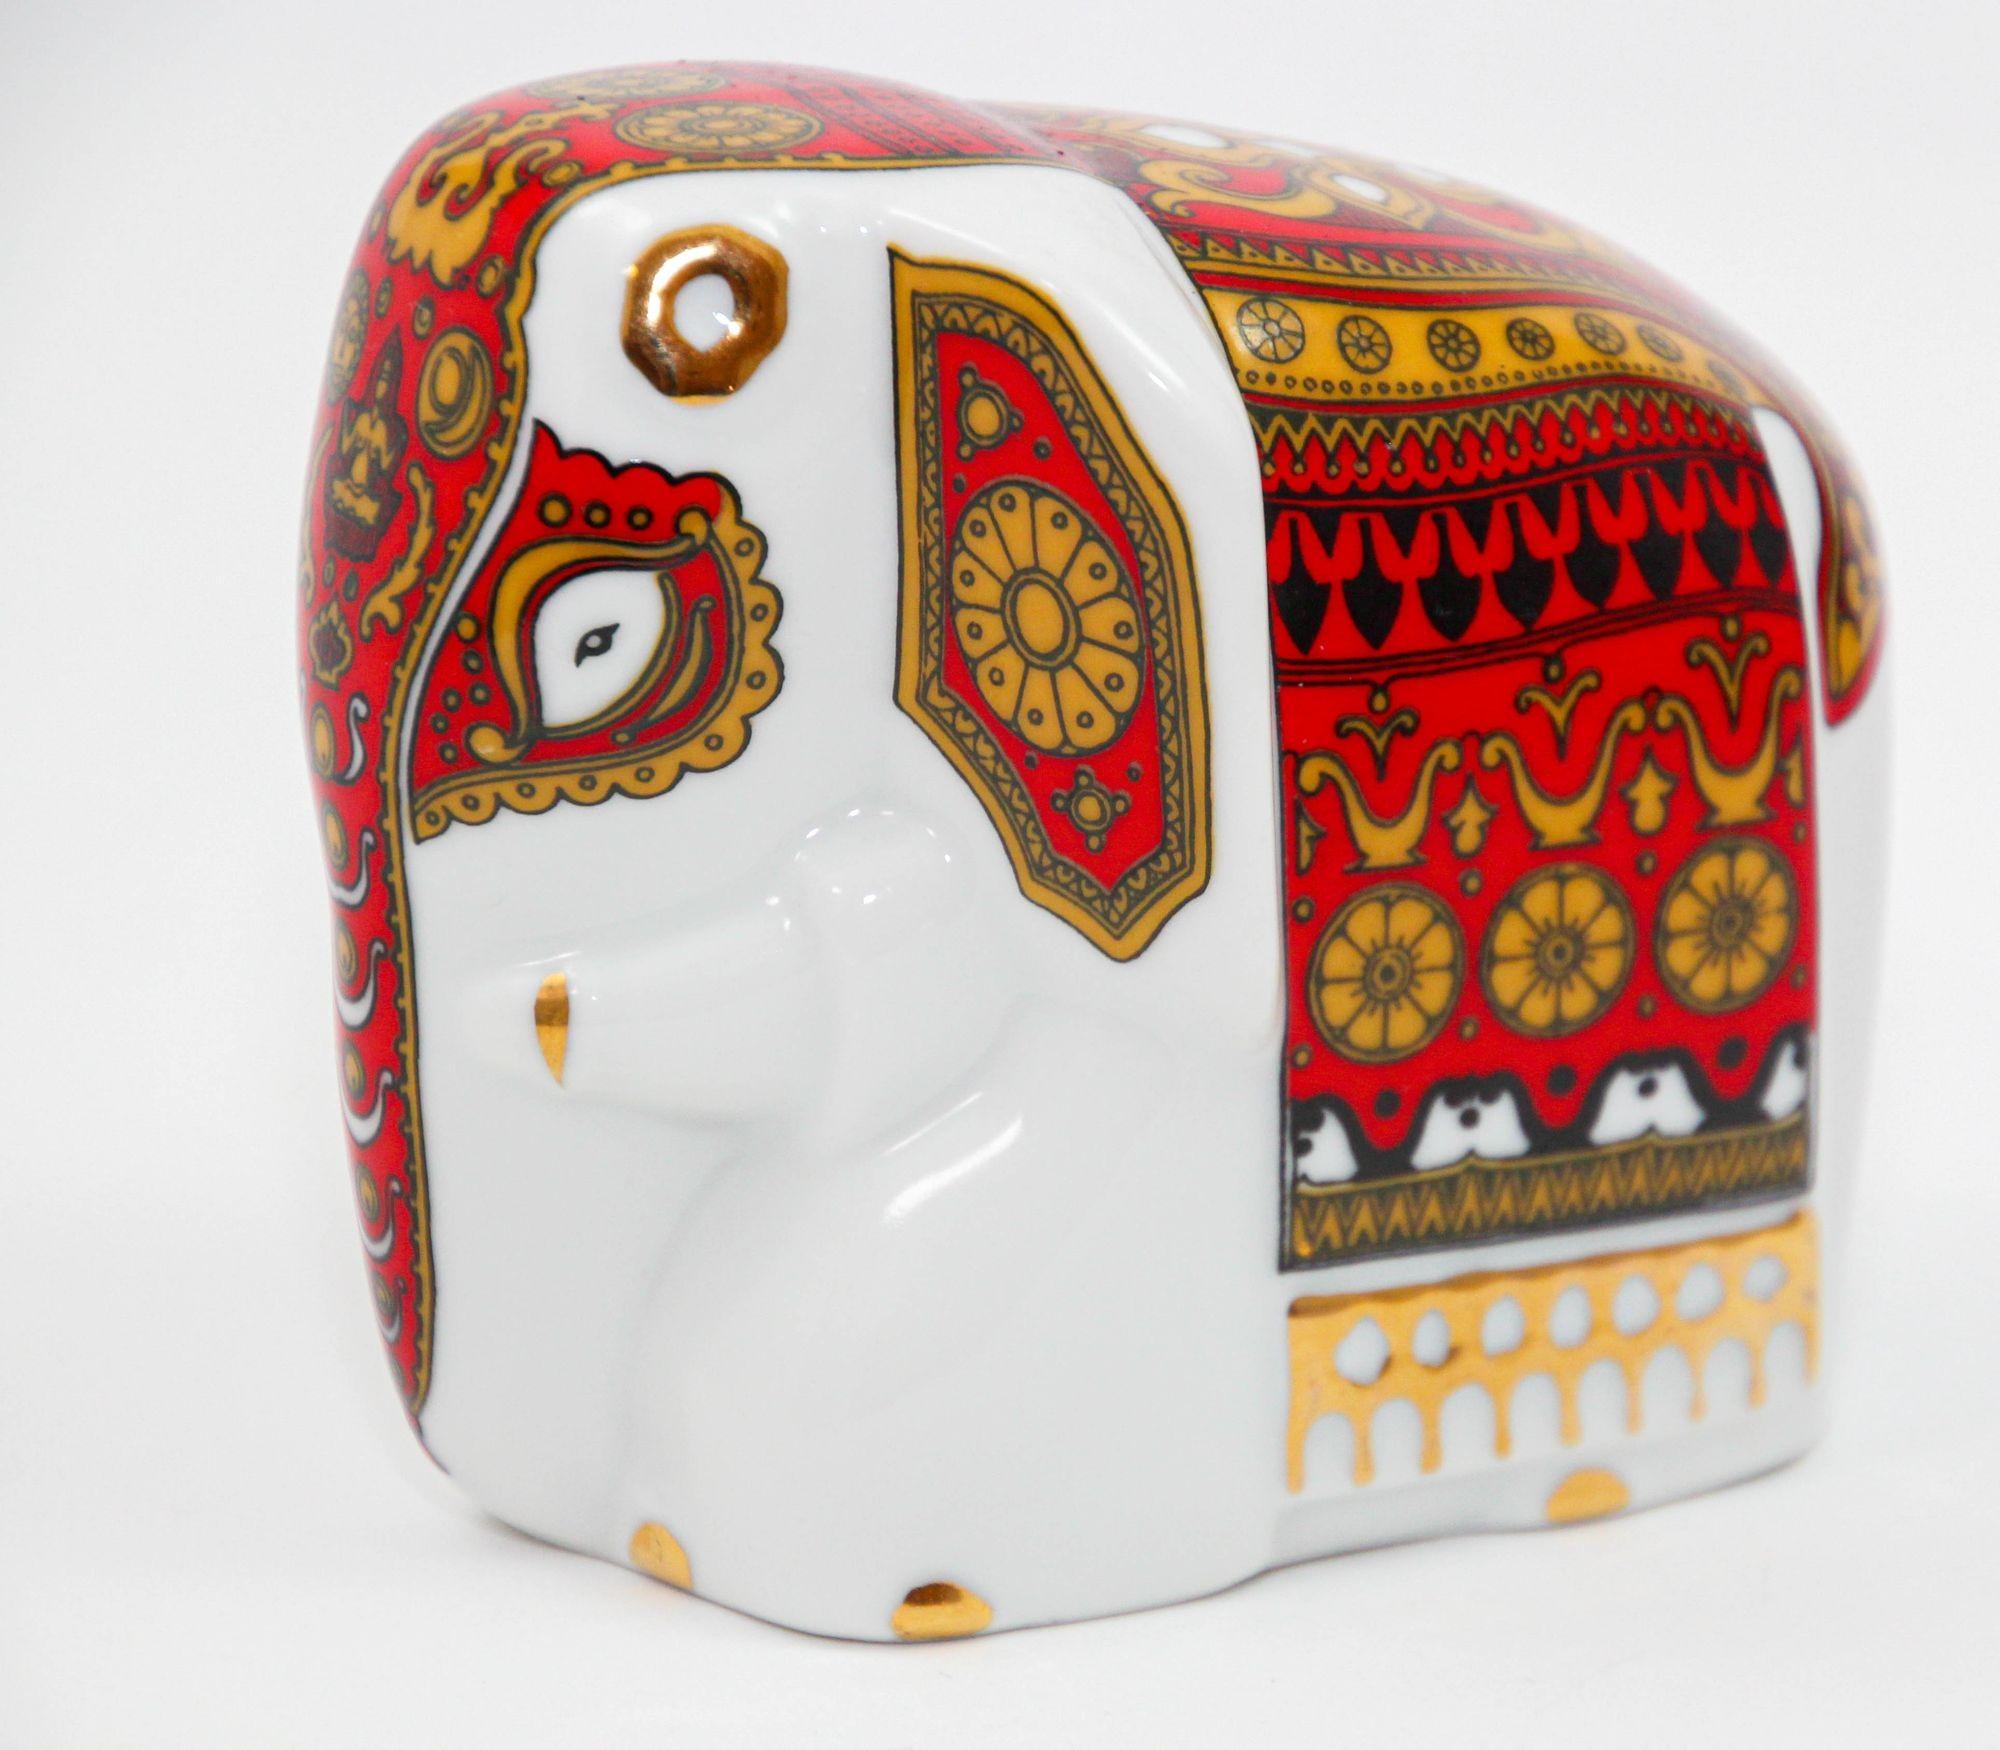 Asiatisches vergoldetes Porzellan Elefanten Ornament Briefbeschwerer aus Sri Lanka.
Charmantes Mlesna-Porzellan mit Gold und Rot auf Weiß.
Dieser Porzellan-Elefant mit exquisiter Goldvergoldung wurde von Lanka Porcelain pvt LTD in Sri Lanka